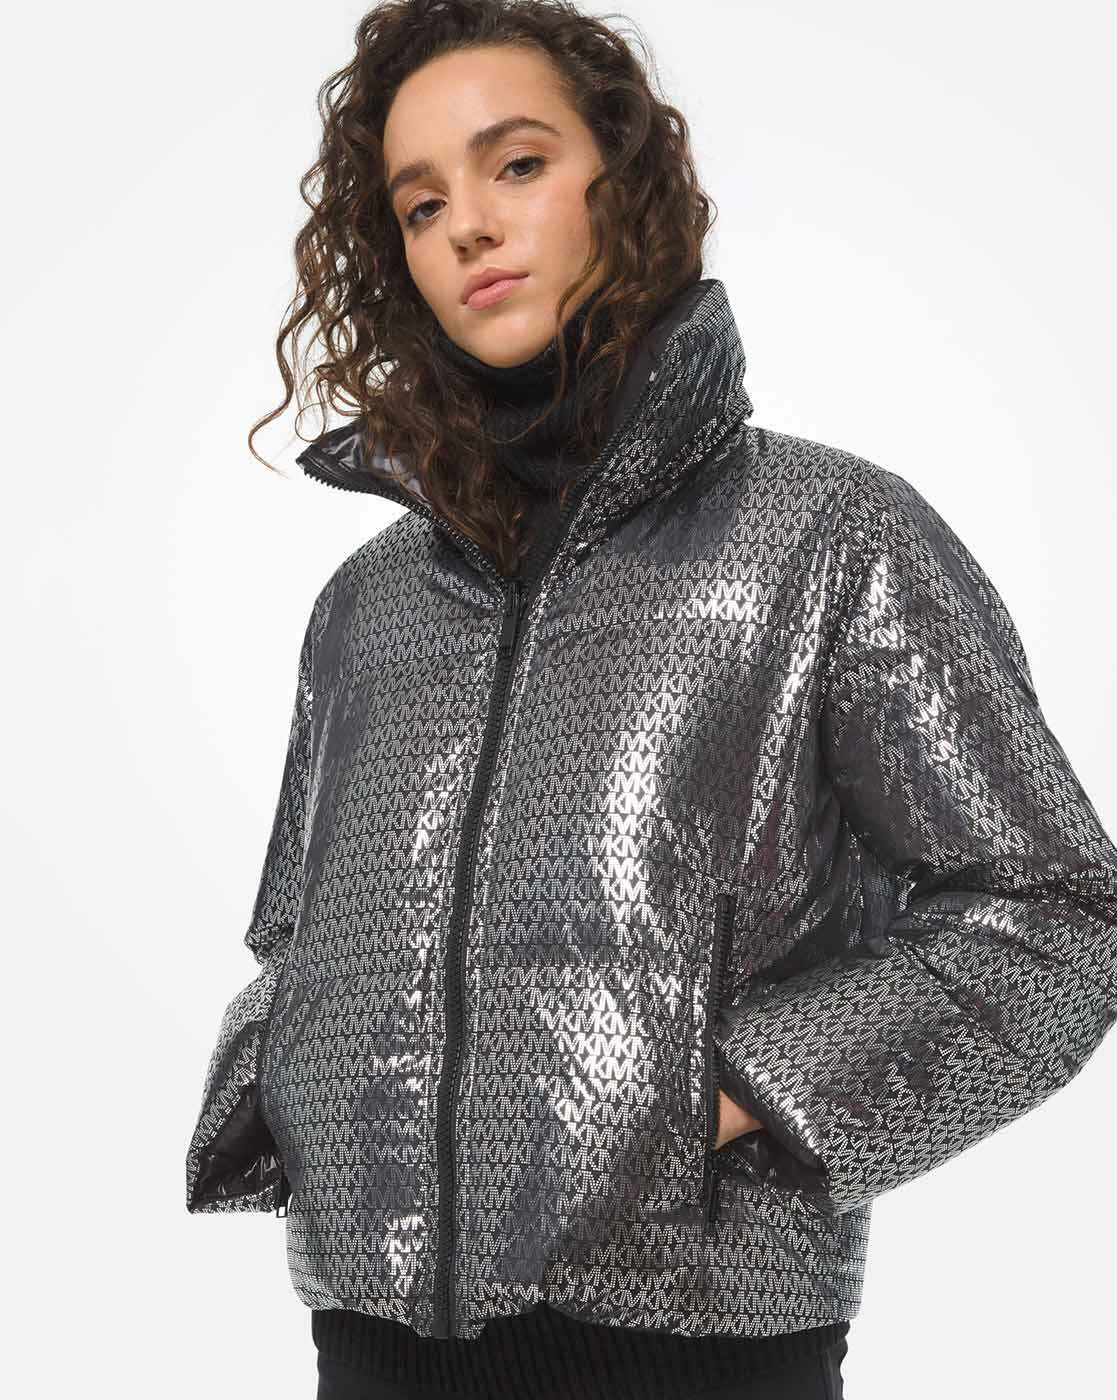 Michael Kors Coats Jackets  Blazers for Women  Nordstrom Rack